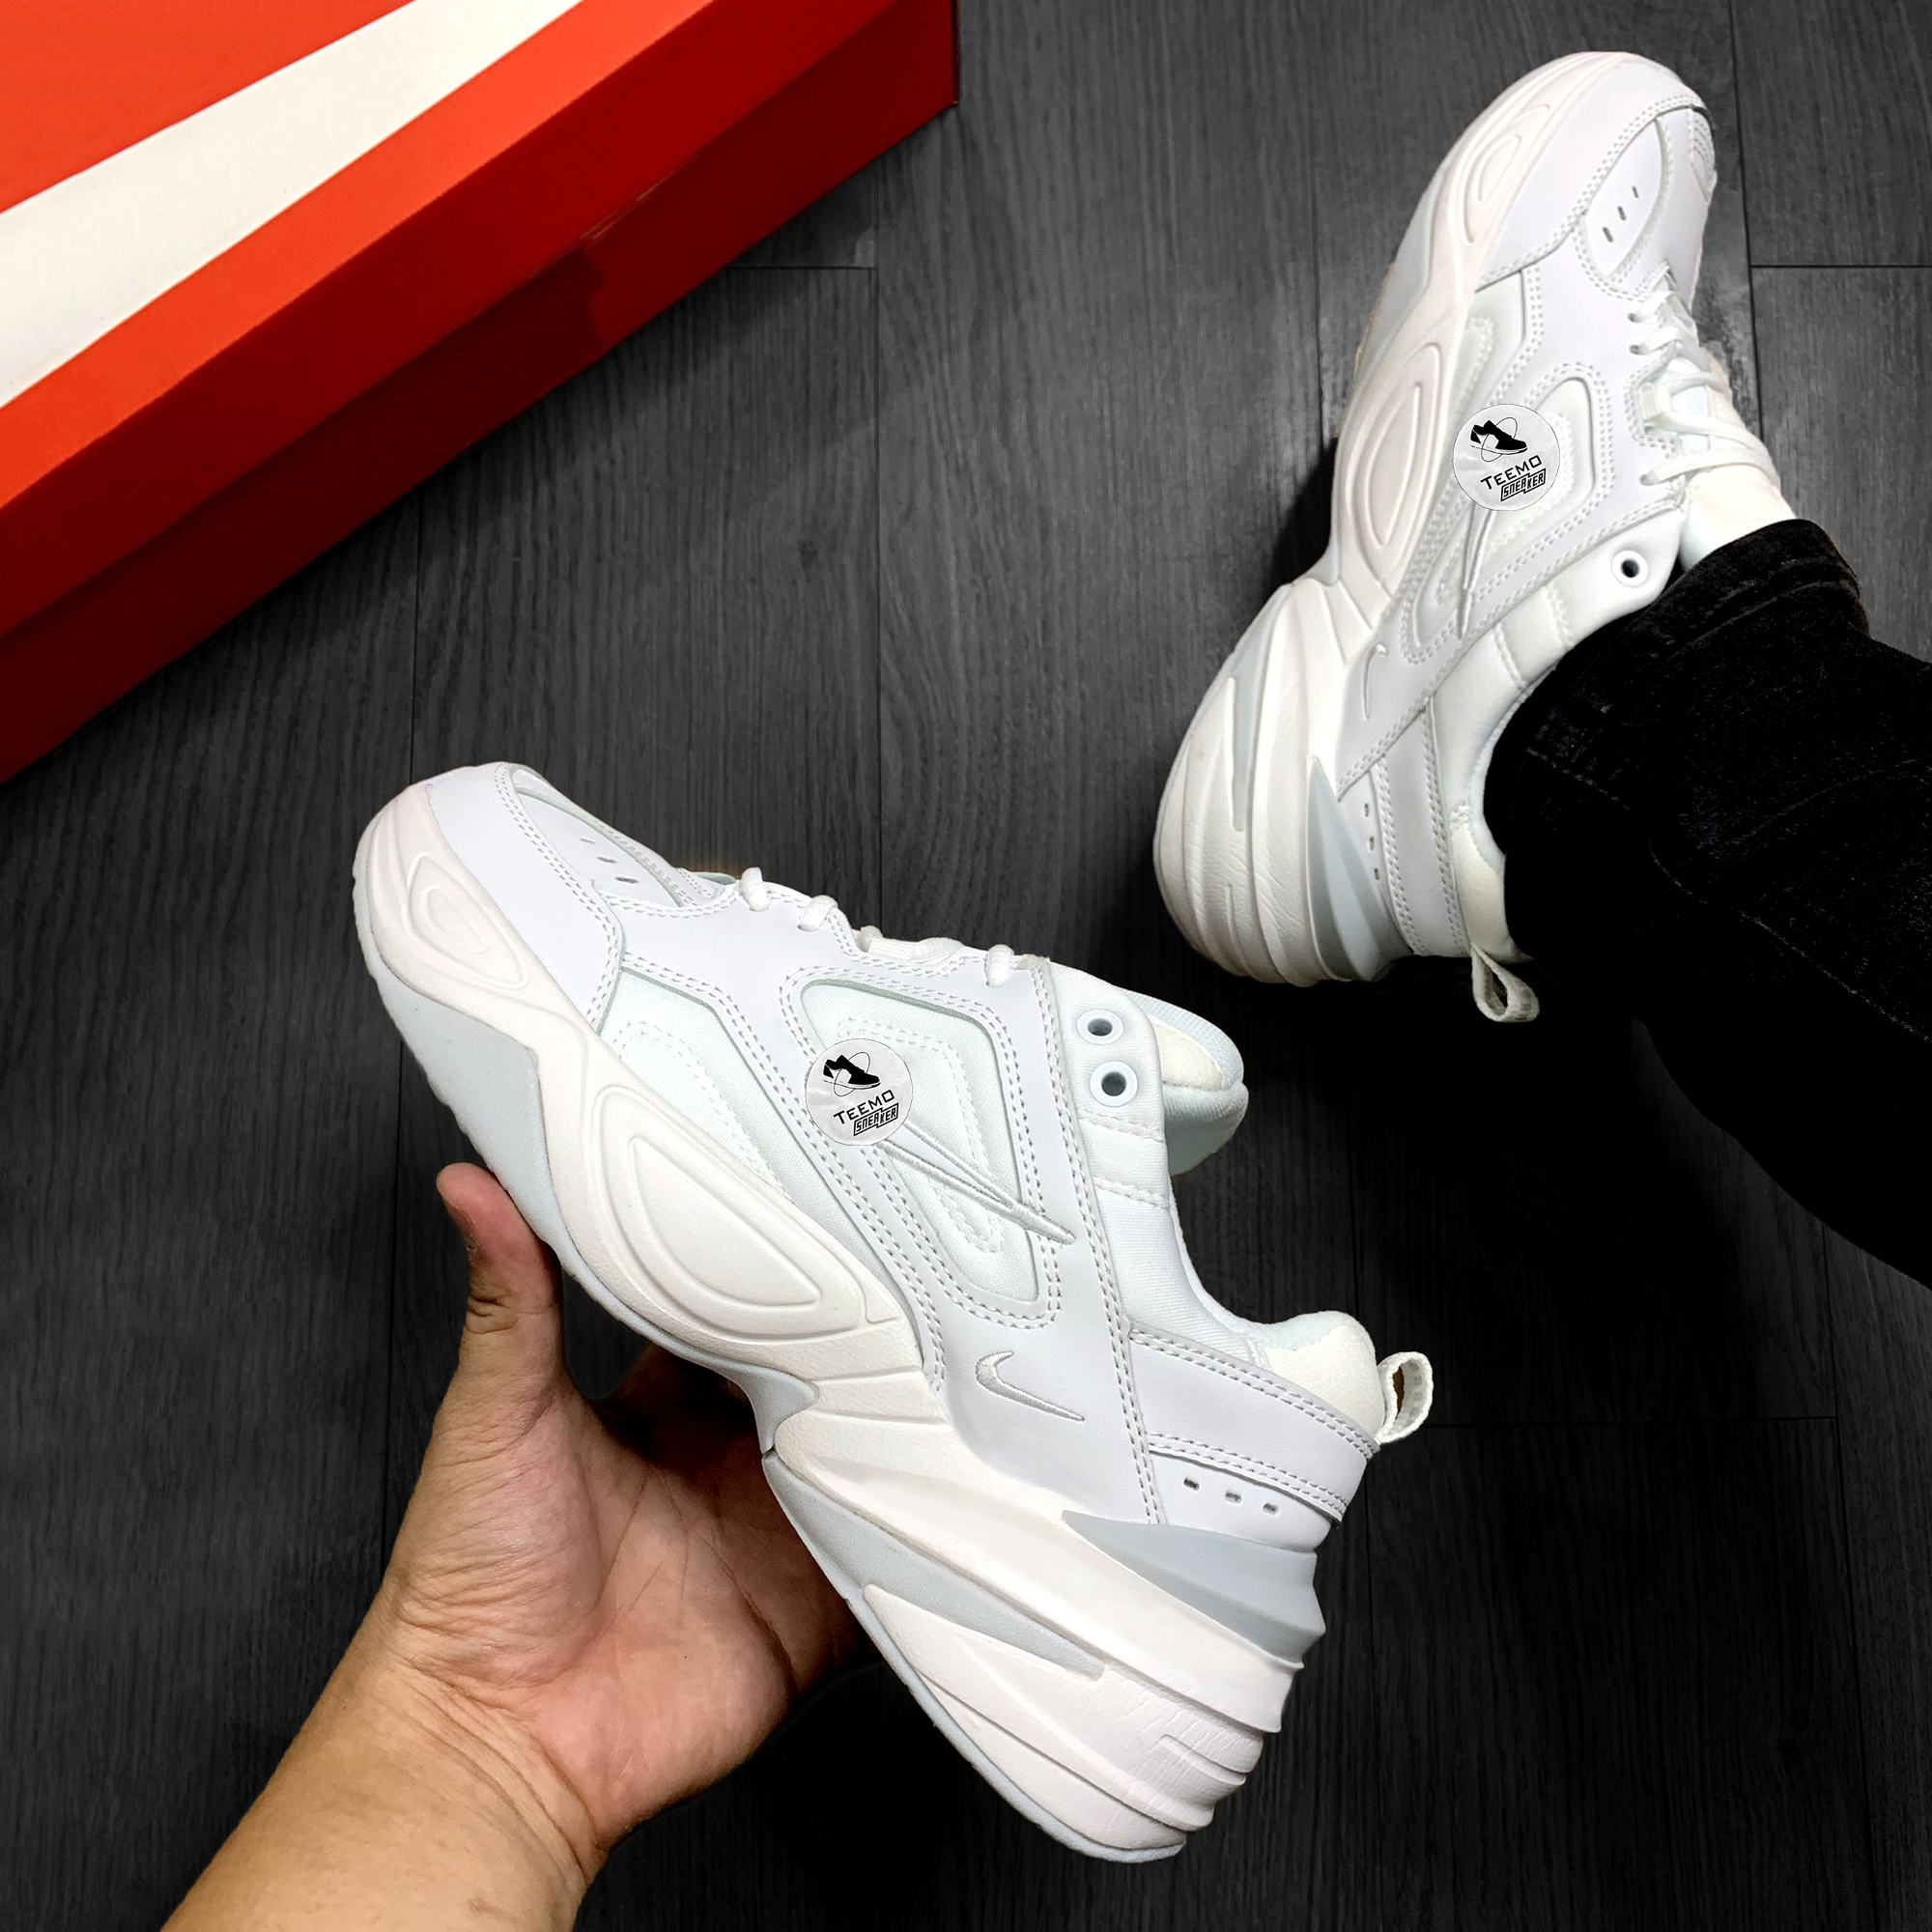 Nike M2K Tekno White - Teemosneaker